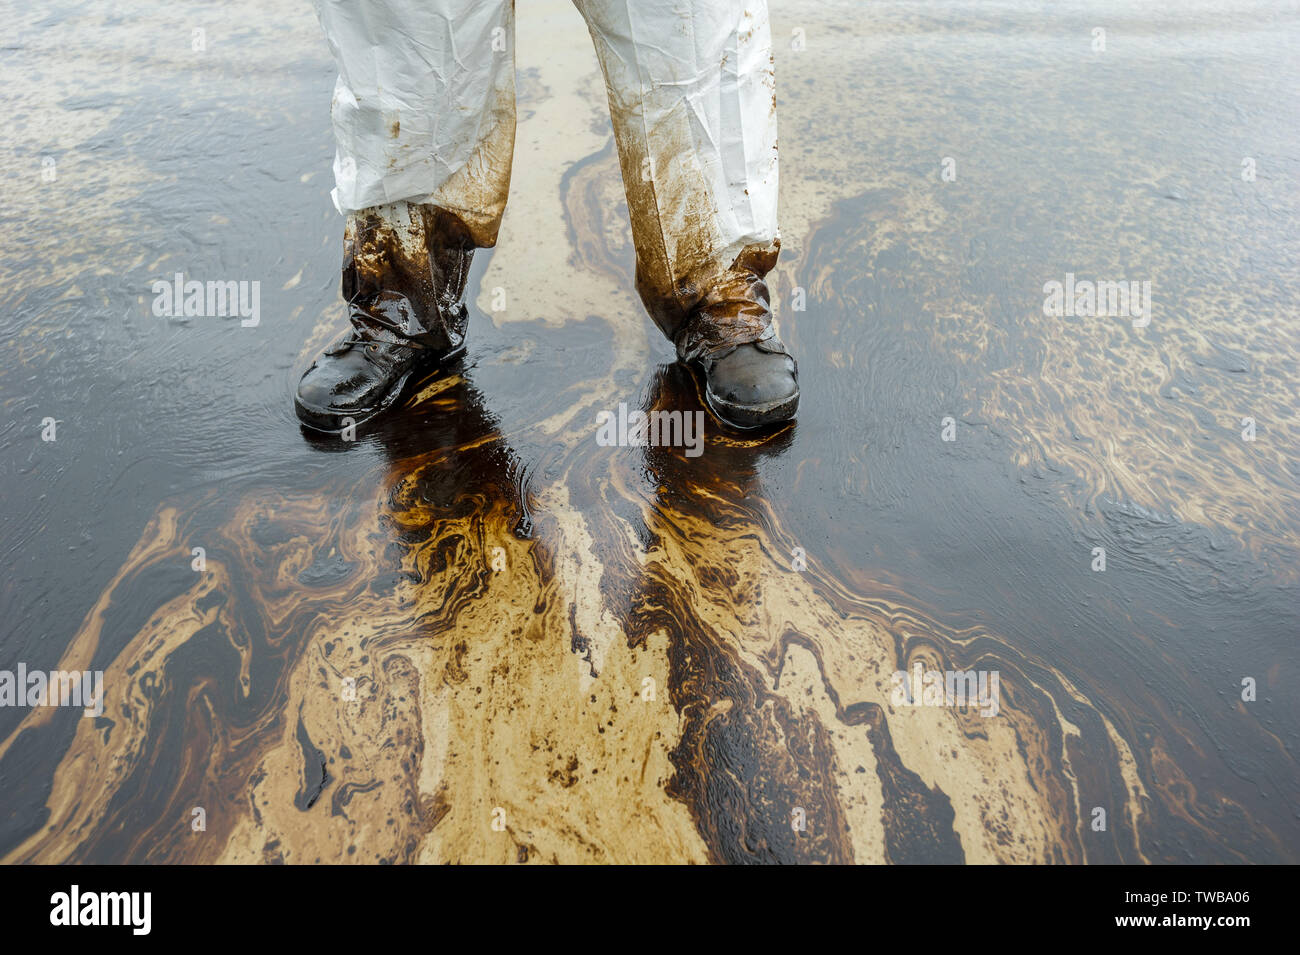 Fuoriuscite di petrolio miscelati con altre sostanze chimiche sul mare e superficie di sabbia. Immagini di inquinamento, Samet Island, Thailandia. Foto Stock